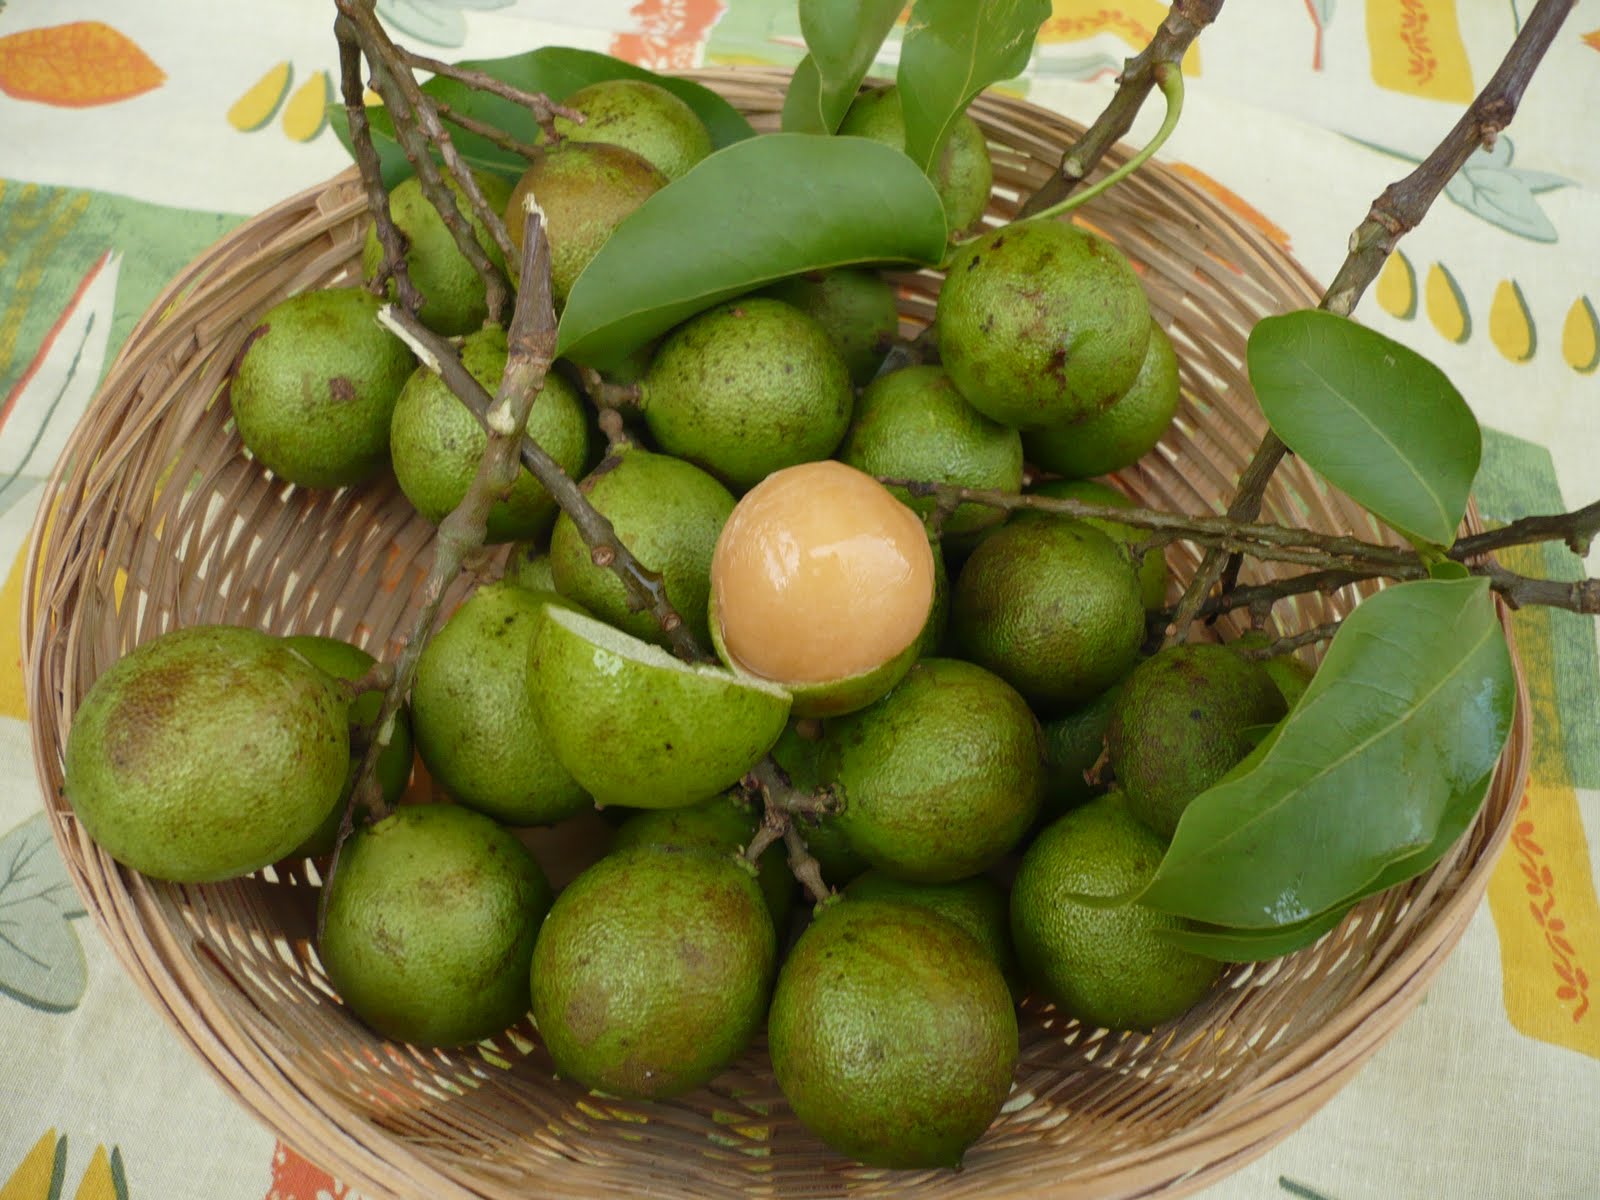 mamon fruta dominicana - HD 1600 × 1200.